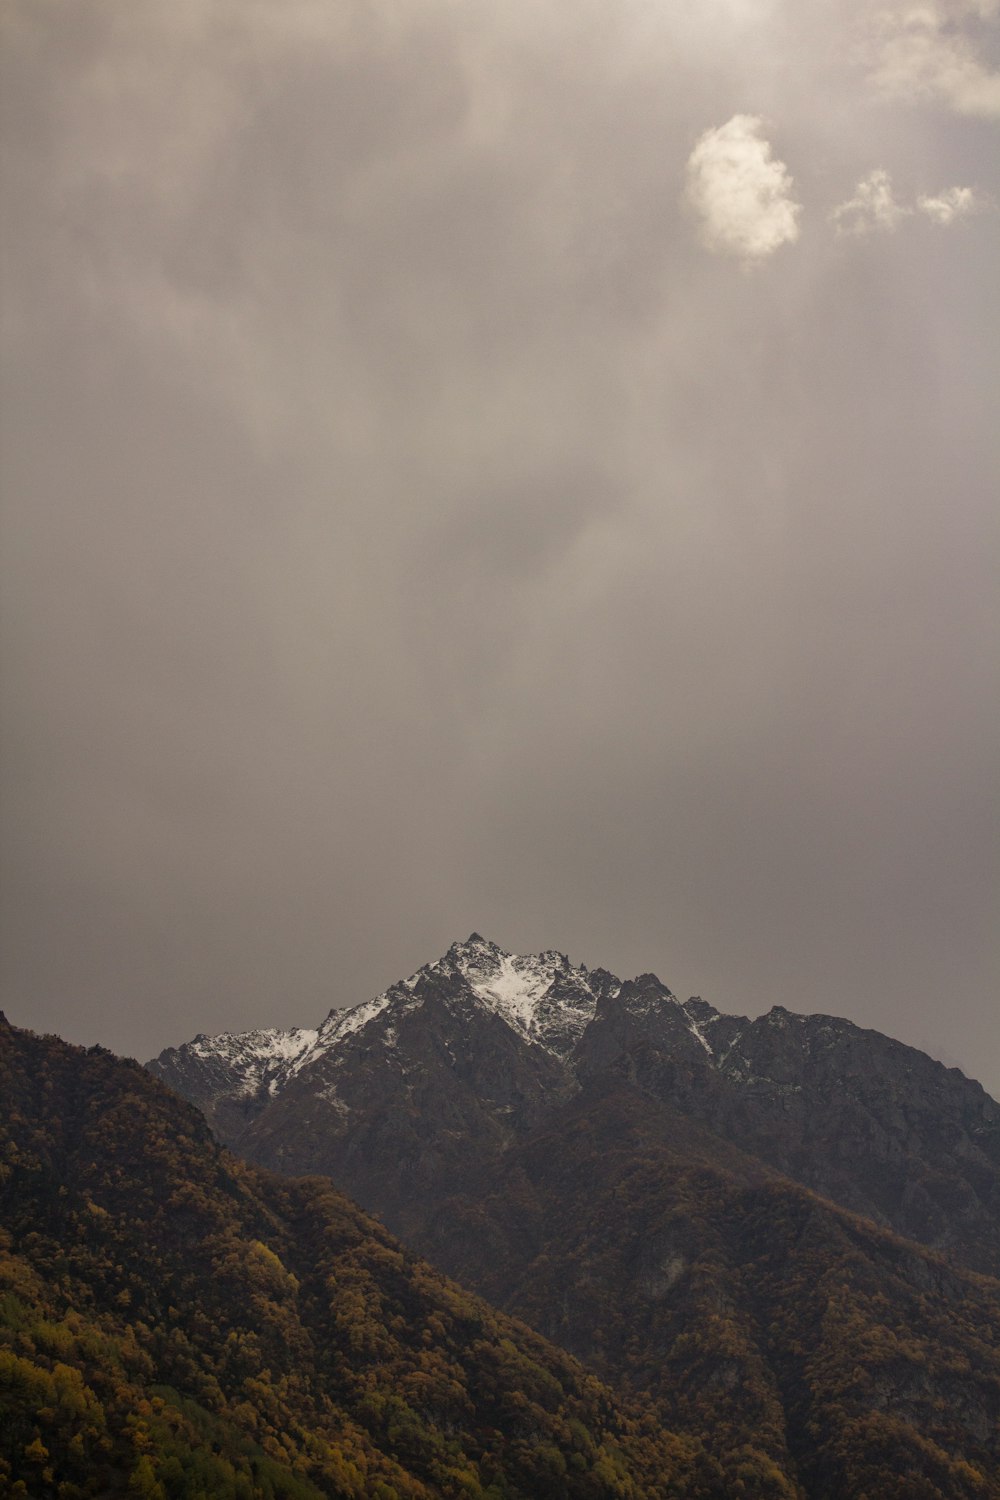 Una vista de una cadena montañosa con nieve en la cima